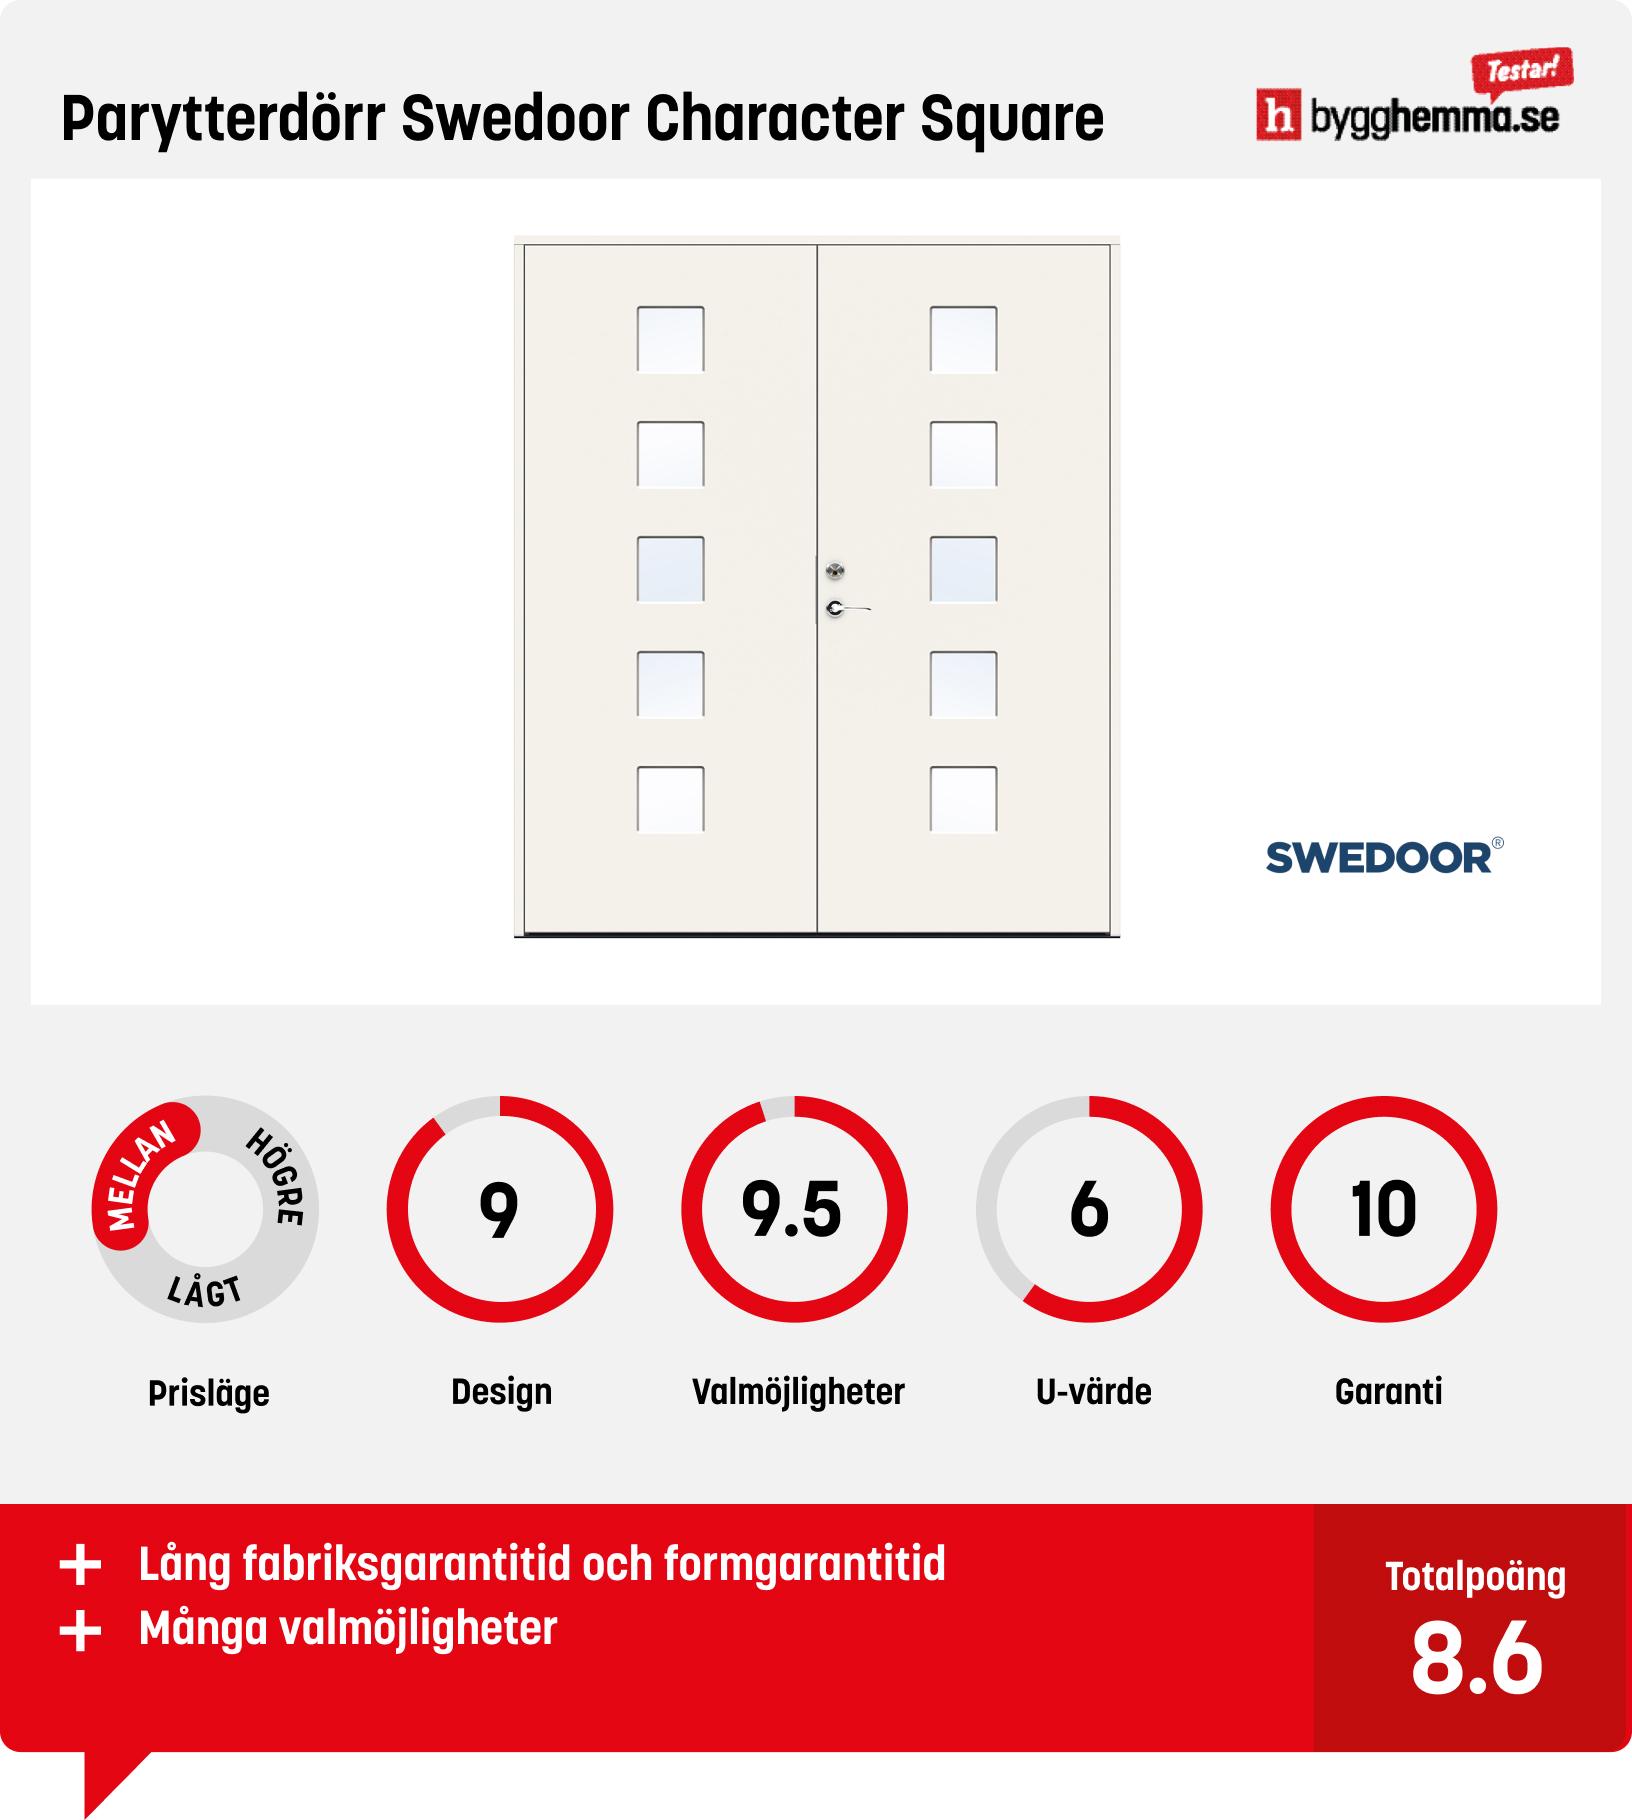 Bästa pardörr ytterdörr - Parytterdörr Swedoor Character Square